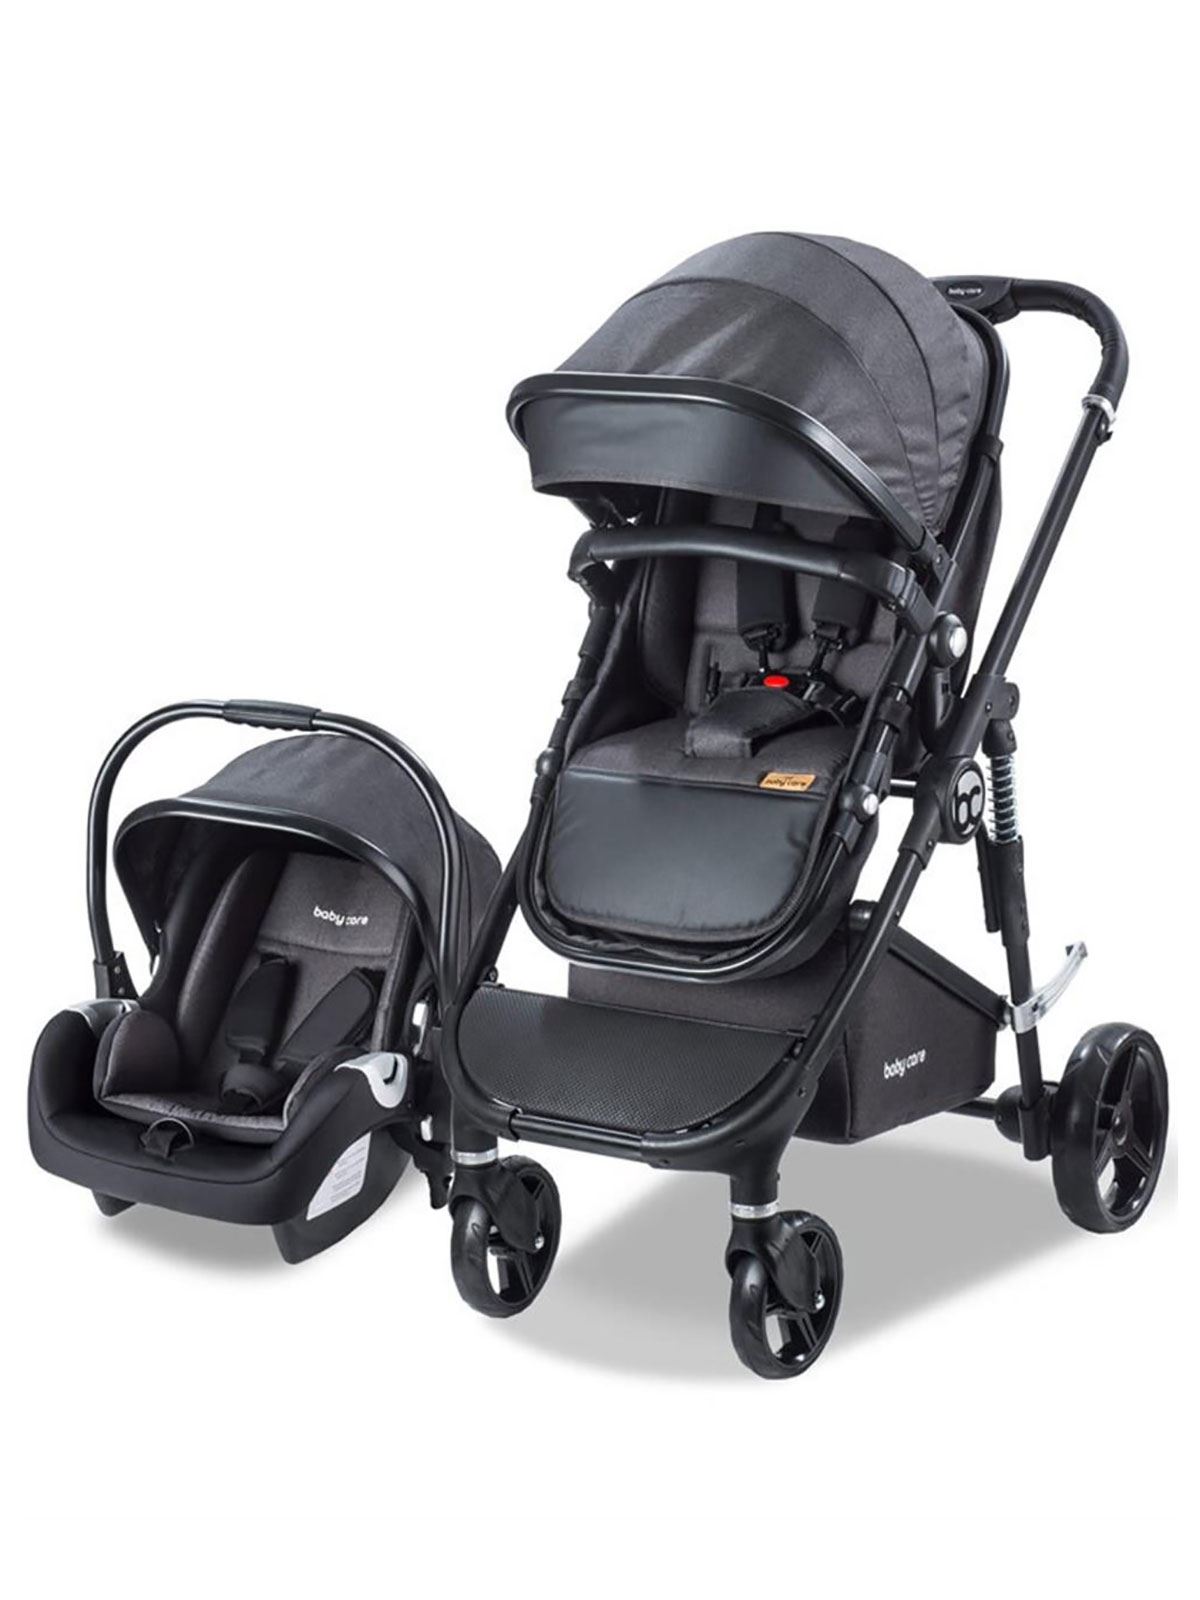 Babycare Colarado Cross Travel Sistem Bebek Arabası Siyah